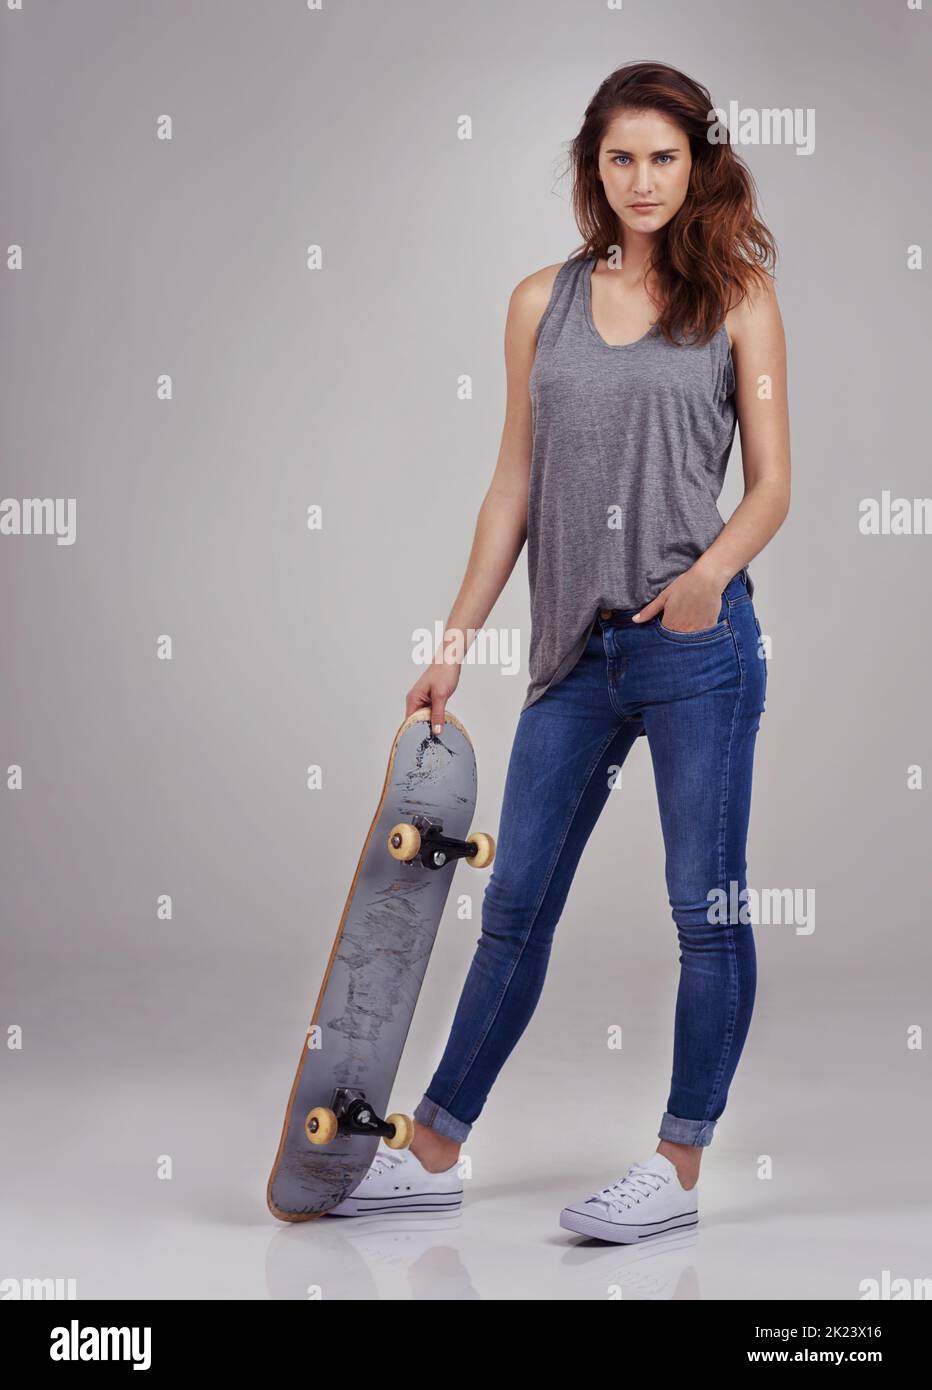 Skate betty. In voller Länge Studio-Porträt von lässig gekleideten jungen Frau auf einem Skateboard halten. Stockfoto